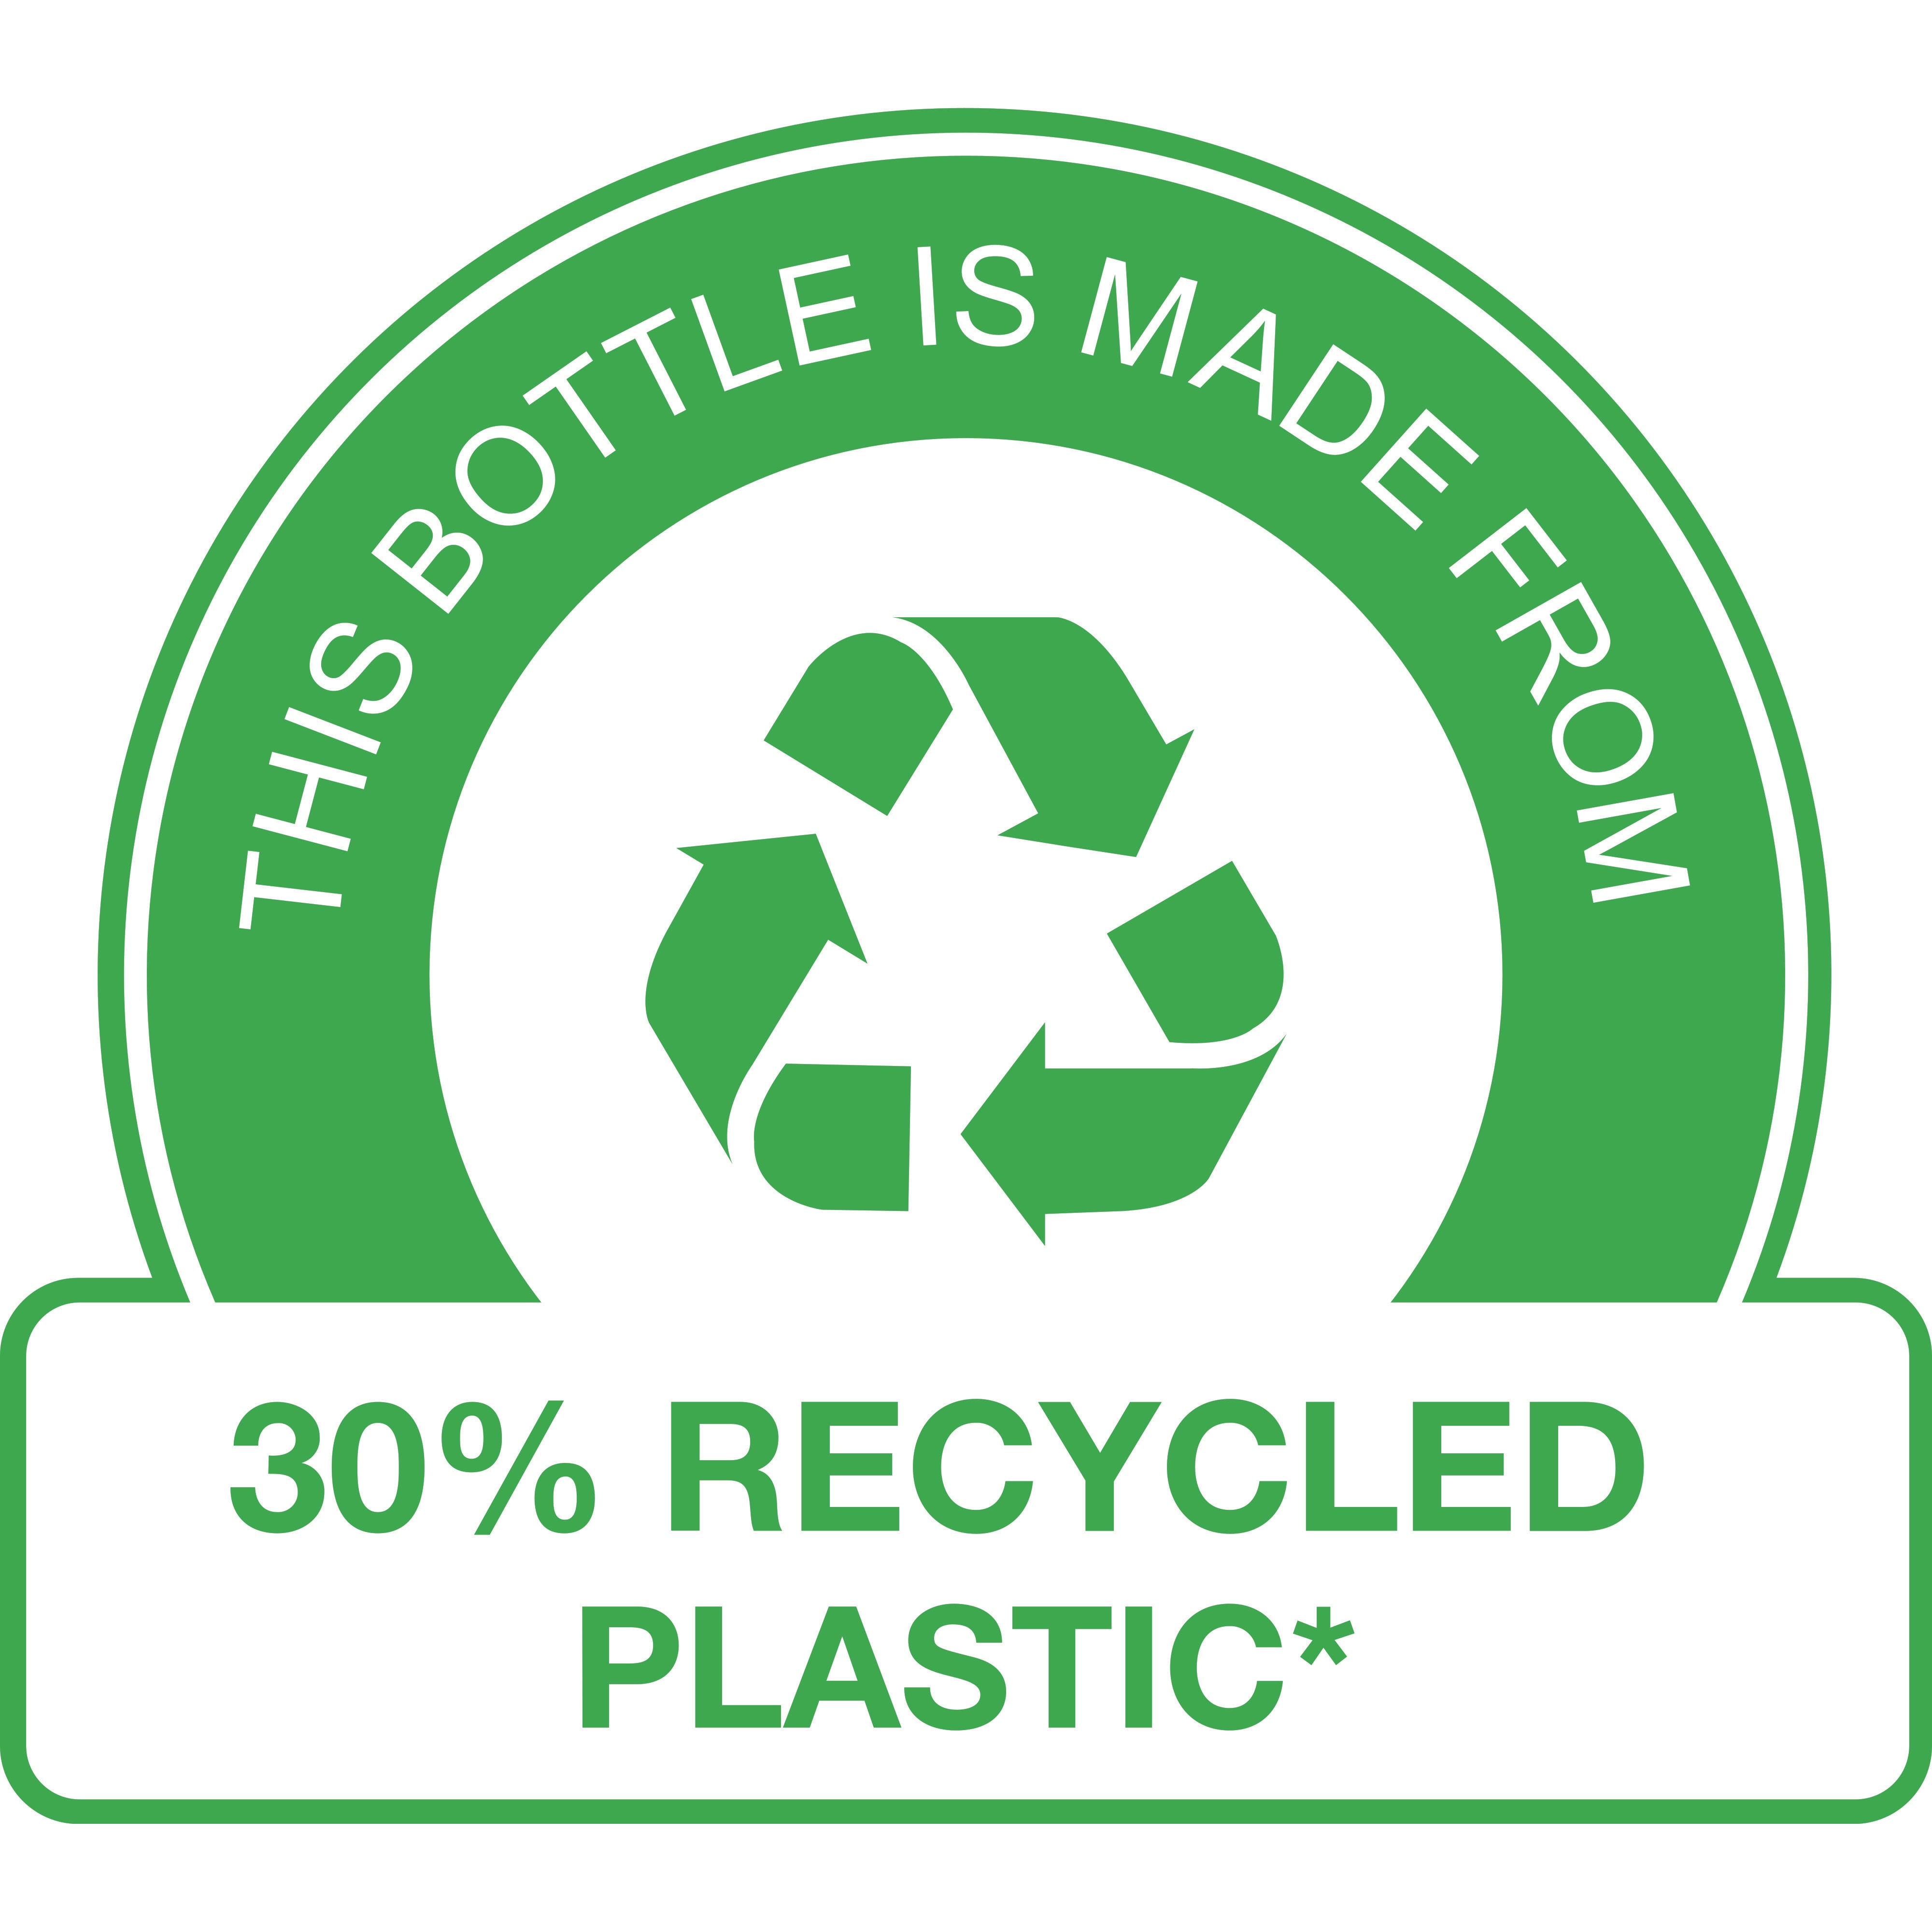 Cette bouteille est composée de 30 % de plastique recyclé* 

(*pompe non incluse)